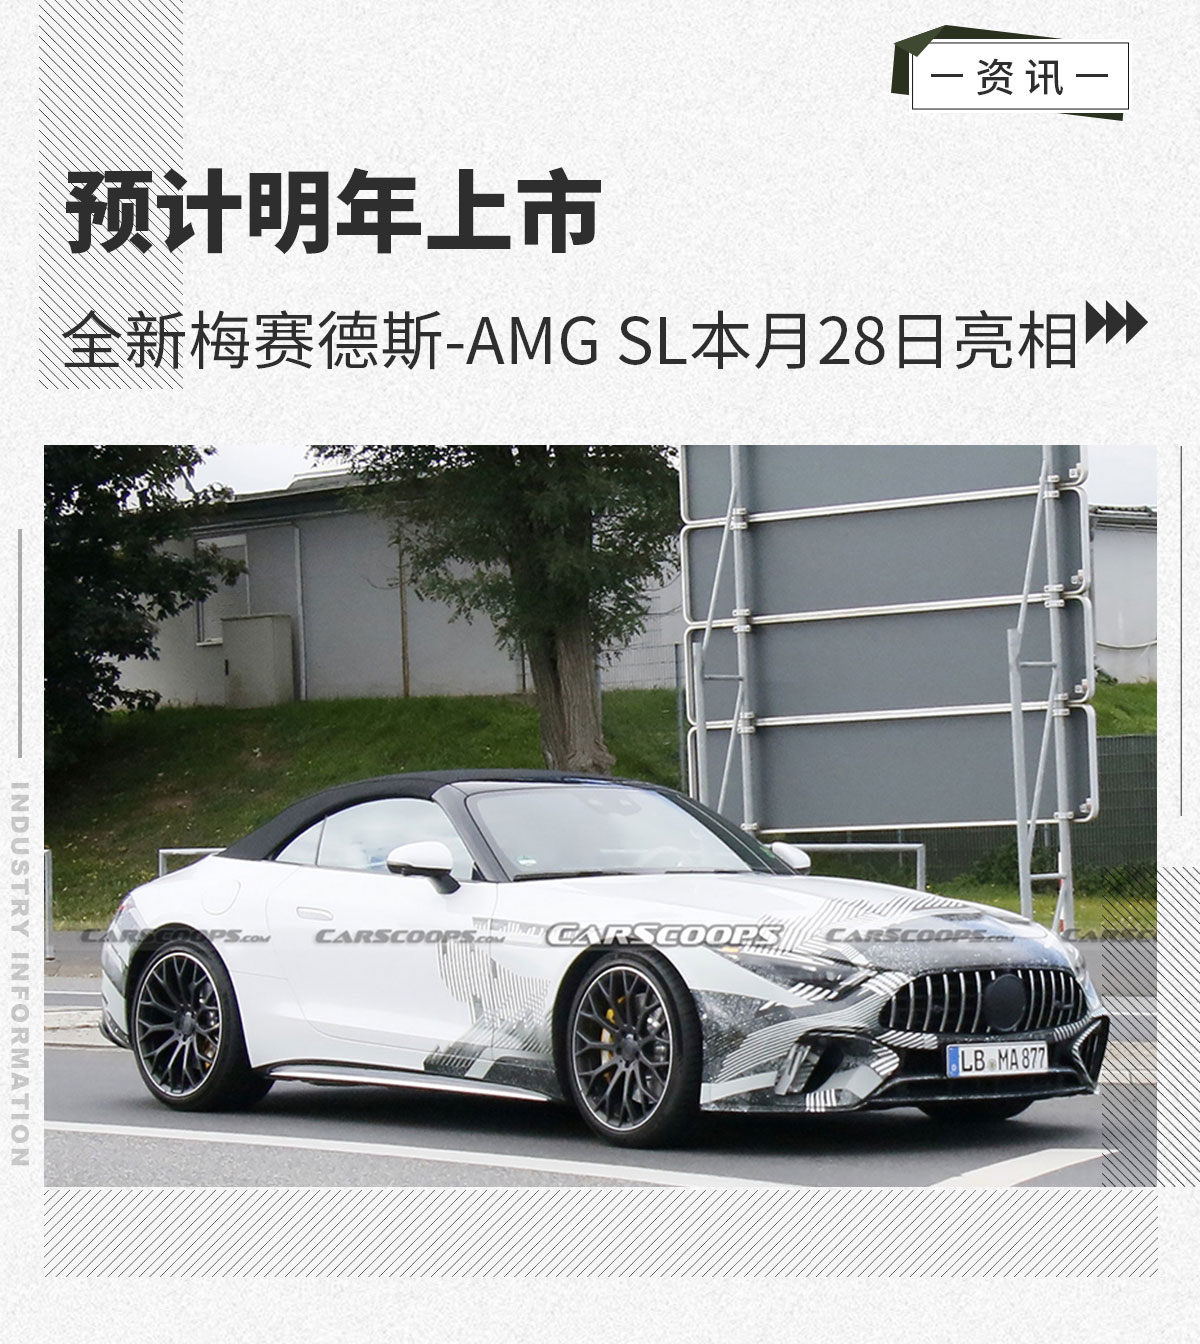 全新梅赛德斯-AMG SL本月28日亮相 预计明年上市